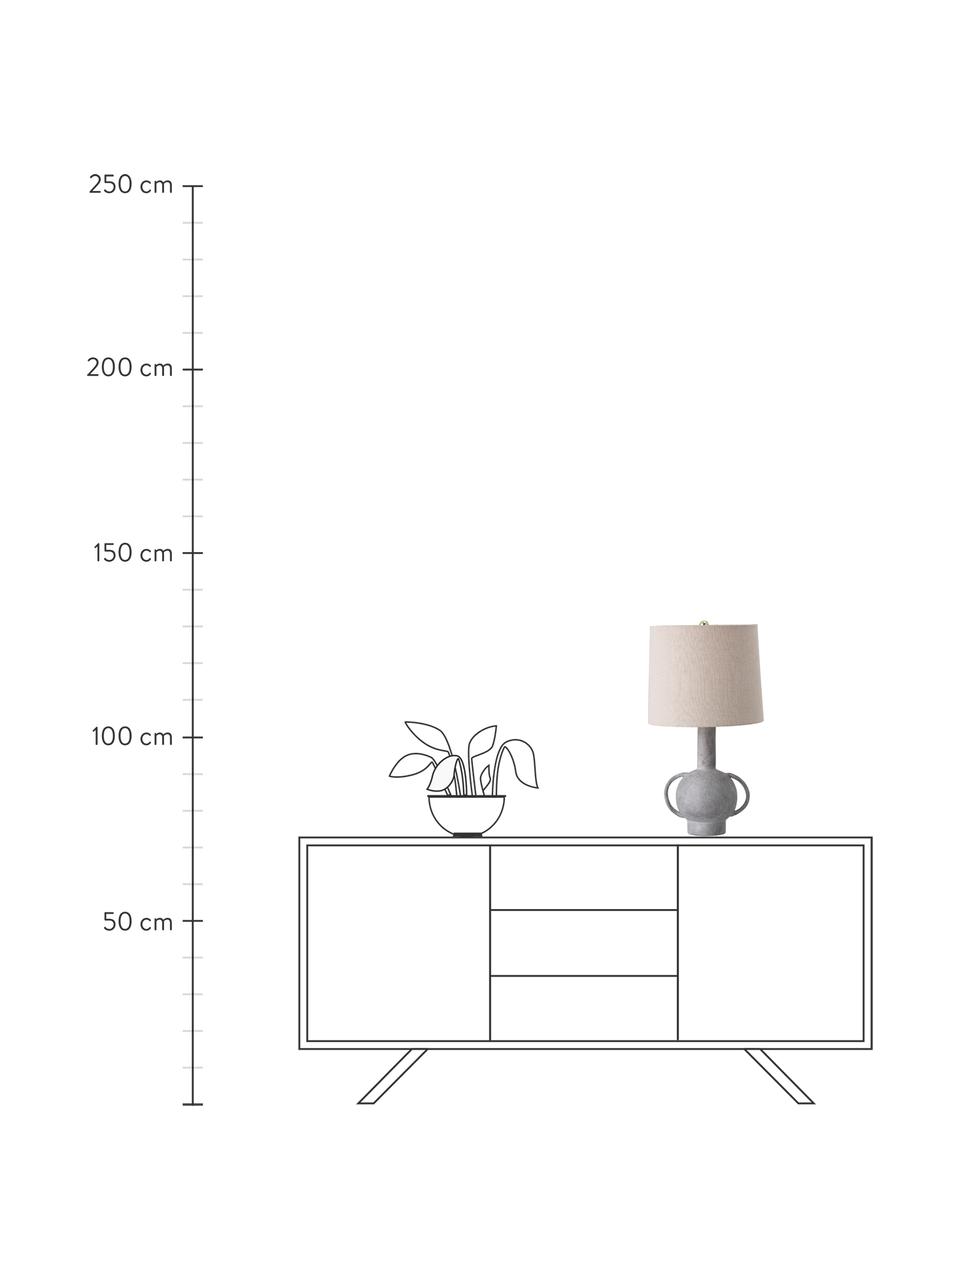 Lampada da tavolo grande in gres e lino Ranya, Paralume: lino, Base della lampada: terracotta, Decorazione: metallo, Beige chiaro, grigio, Ø 31 x Alt. 59 cm